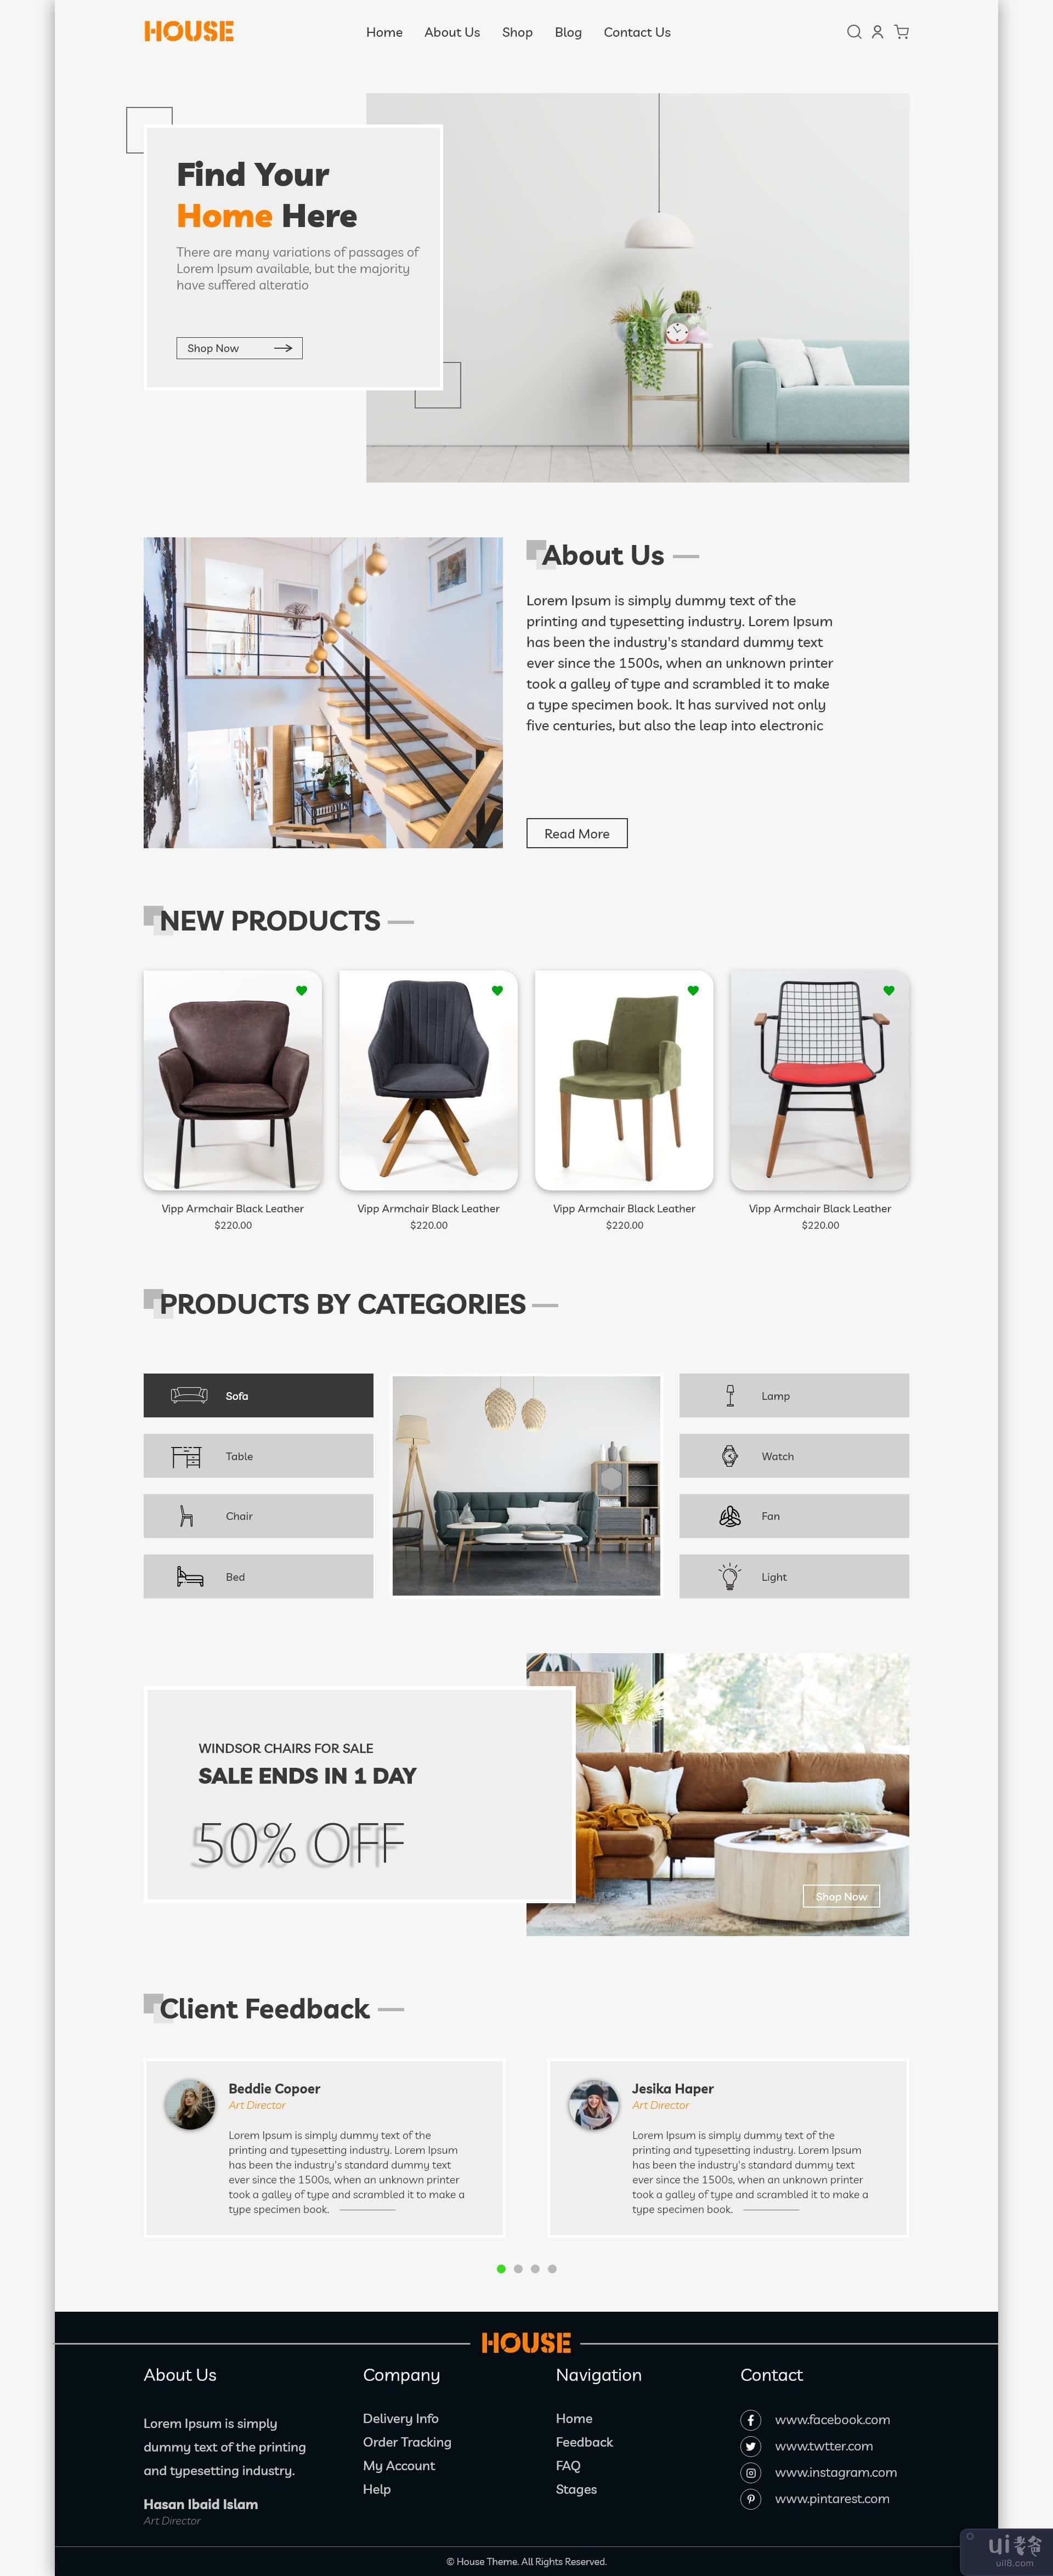 家具网店登陆页面模板设计(Furniture Online Shop Landing Page Template Design)插图